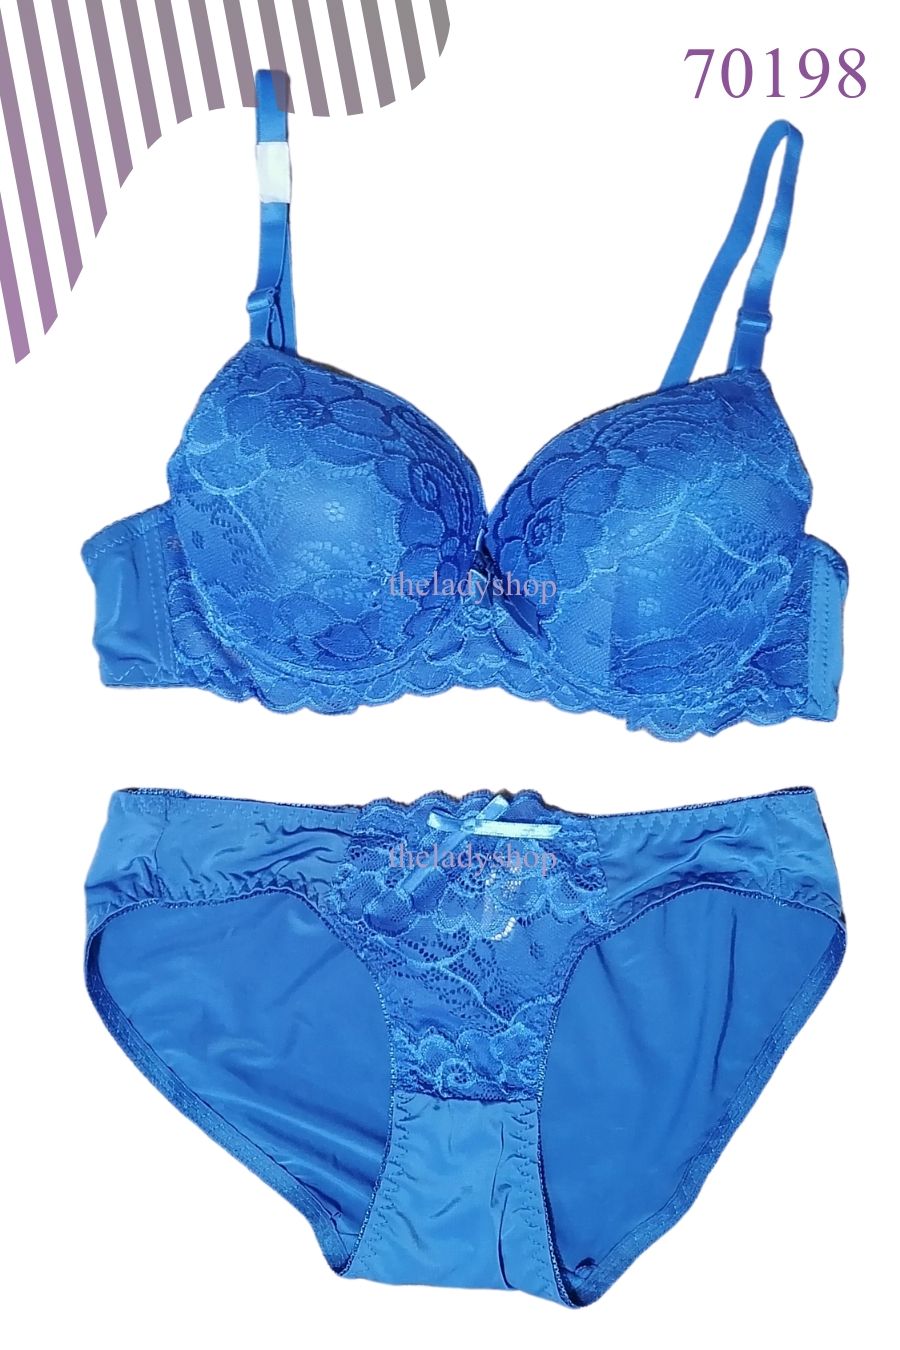 2pc fancy lace on top bra & panty set - Blue - Buy Bra, Nightwears